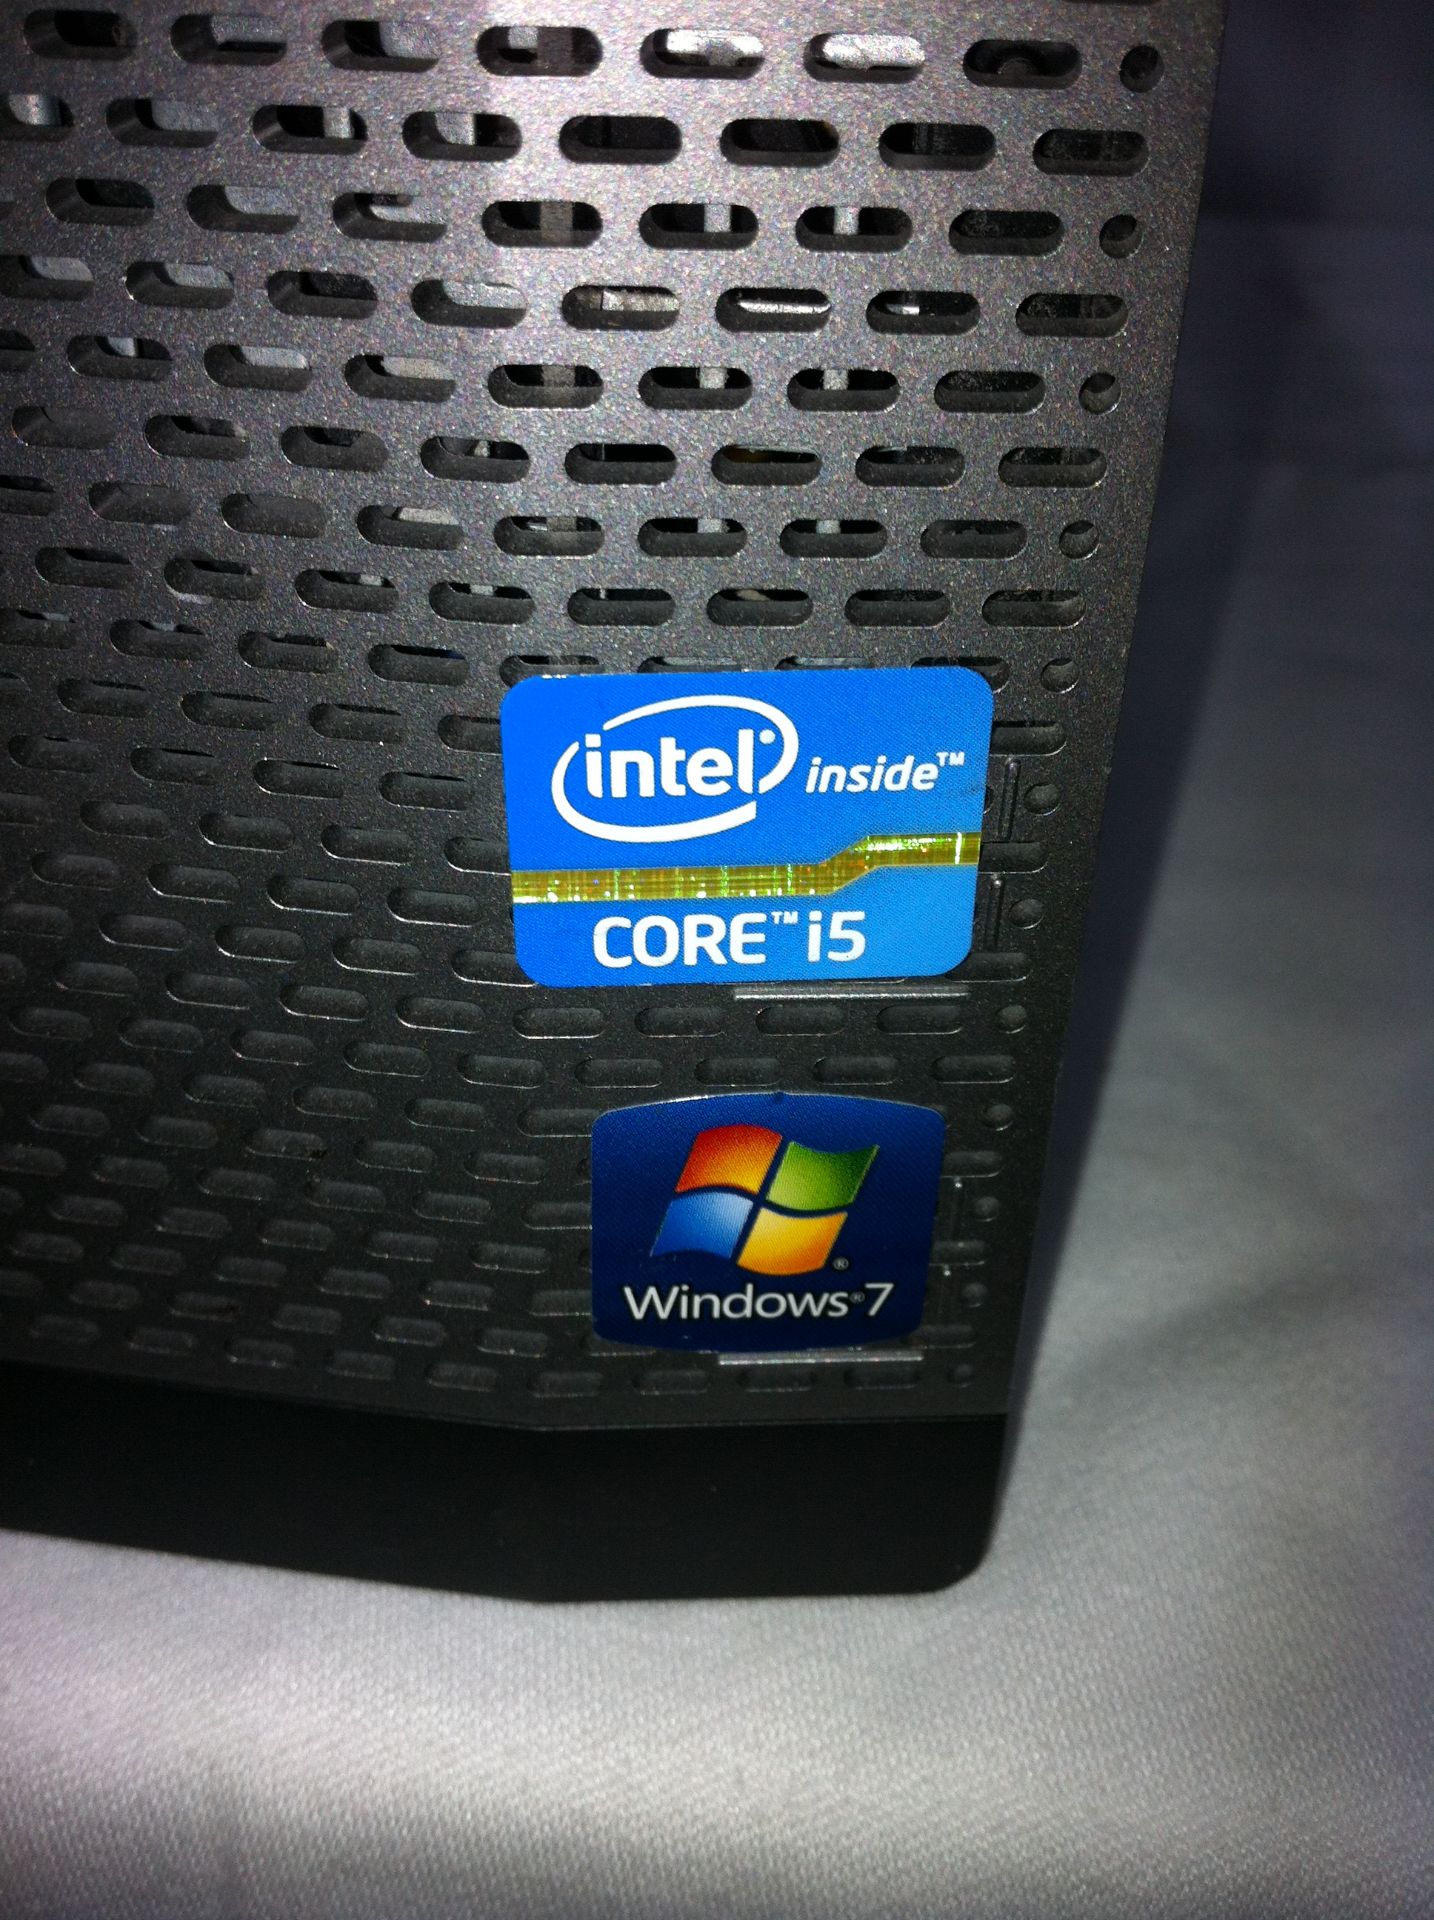 Dell Optiplex 390 Core i5 PC - Image 3 of 4